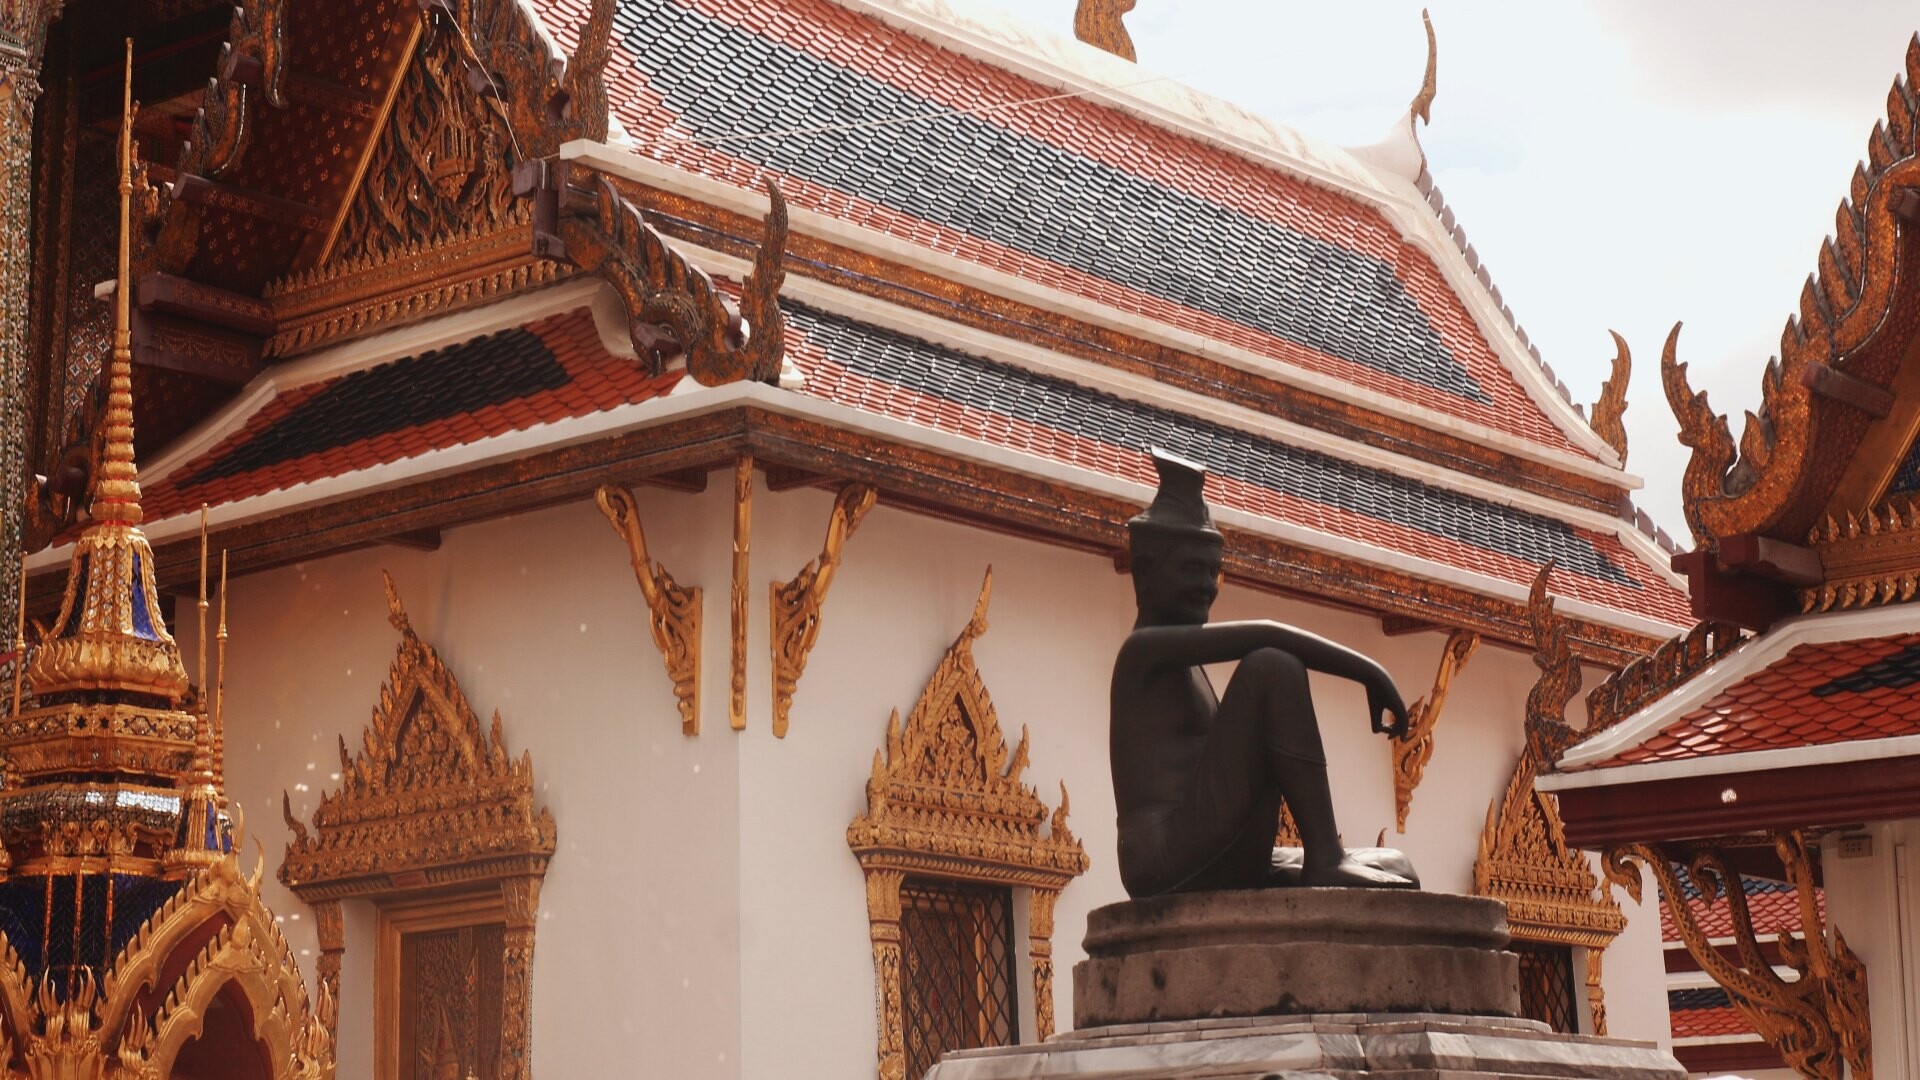 W co wierzą w Tajlandii? Jaka jest religia dominująca?